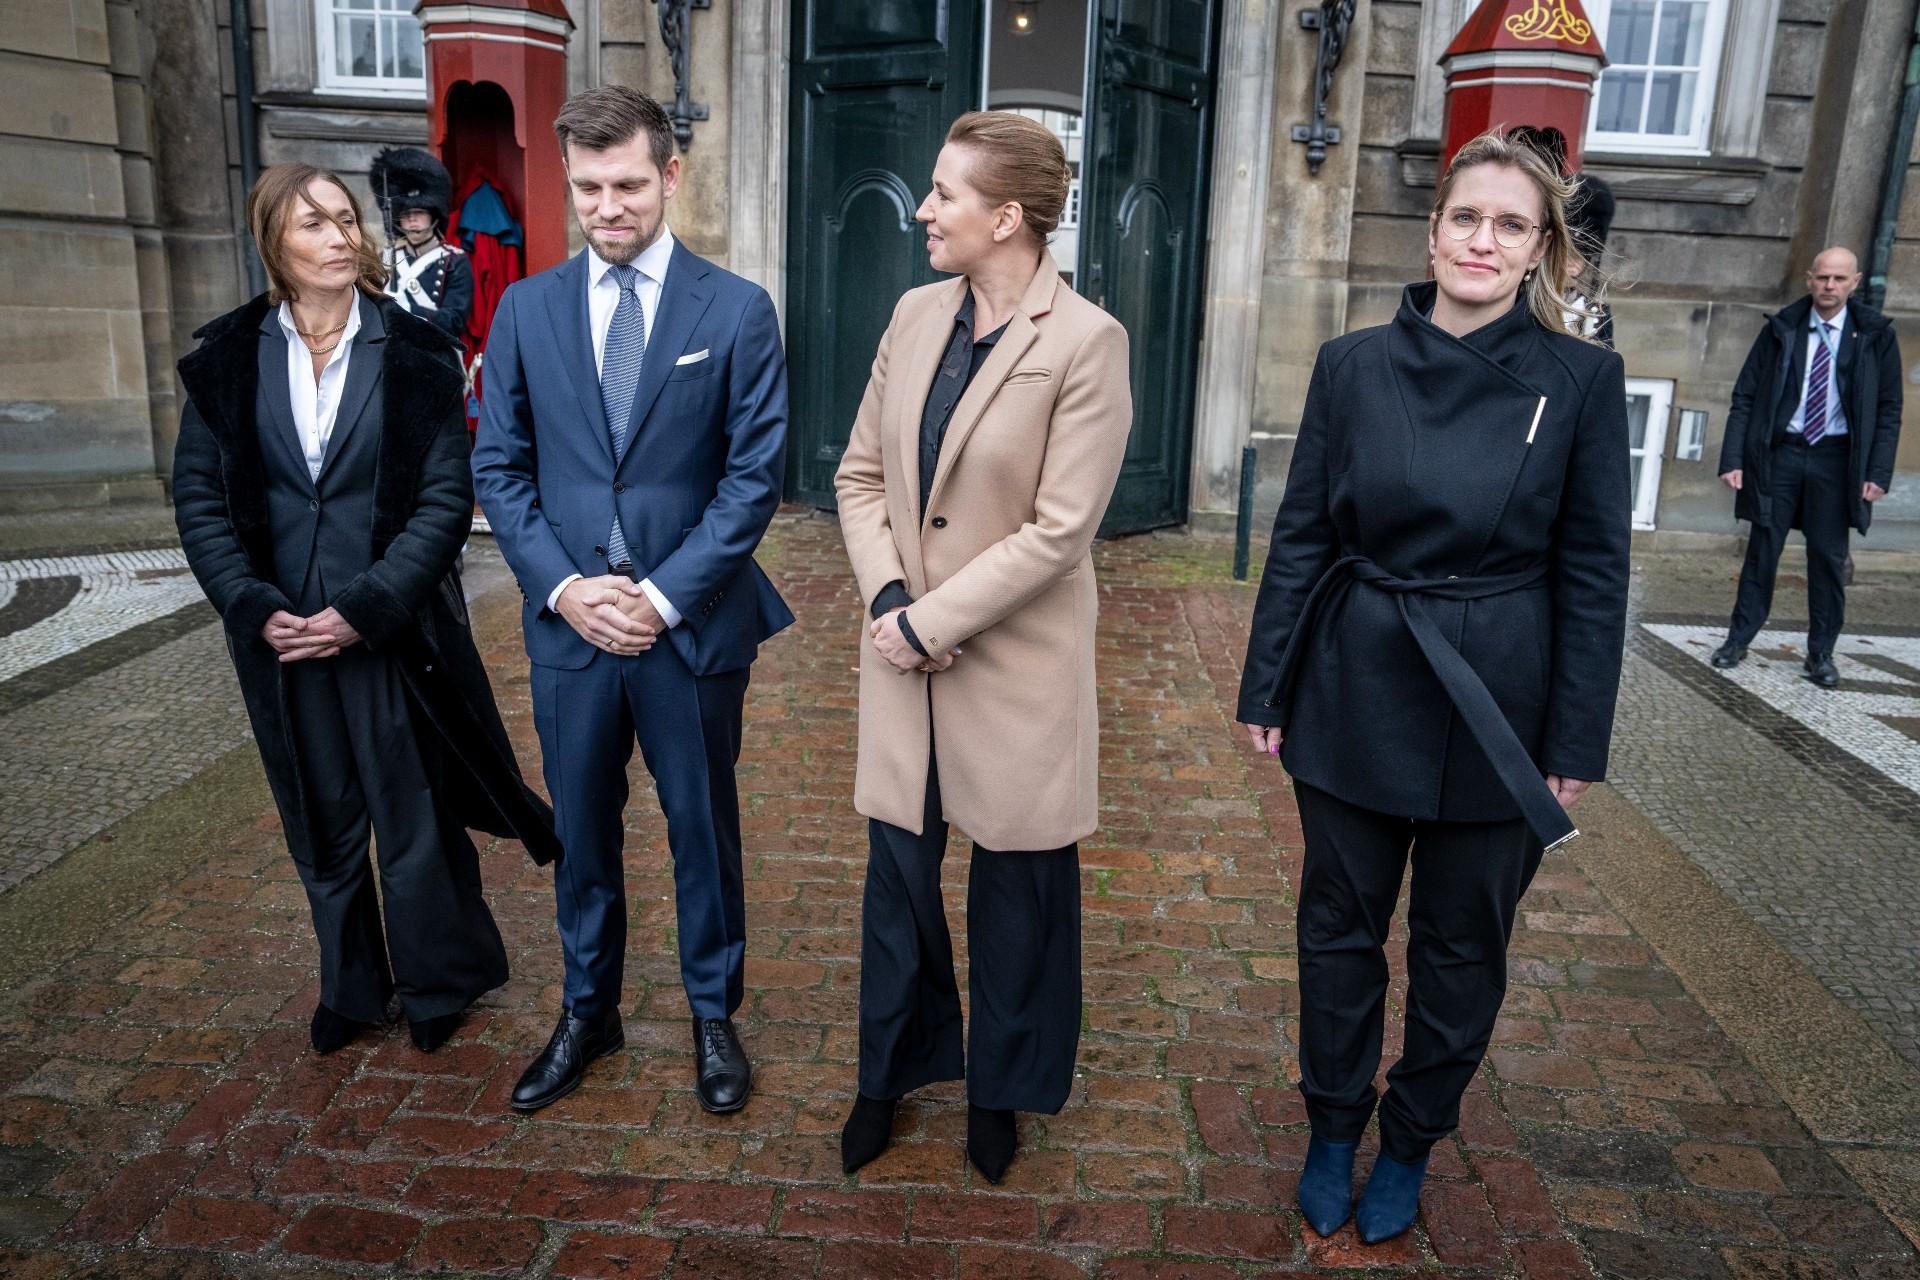 De nye ministre Mia Wagner og Morten Dahlin sammen med statsminister Mette Frederiksen ved præsentationen uden for Amalienborg. Til højre Stephanie Lohse, der vender tilbage som økonomiminister.